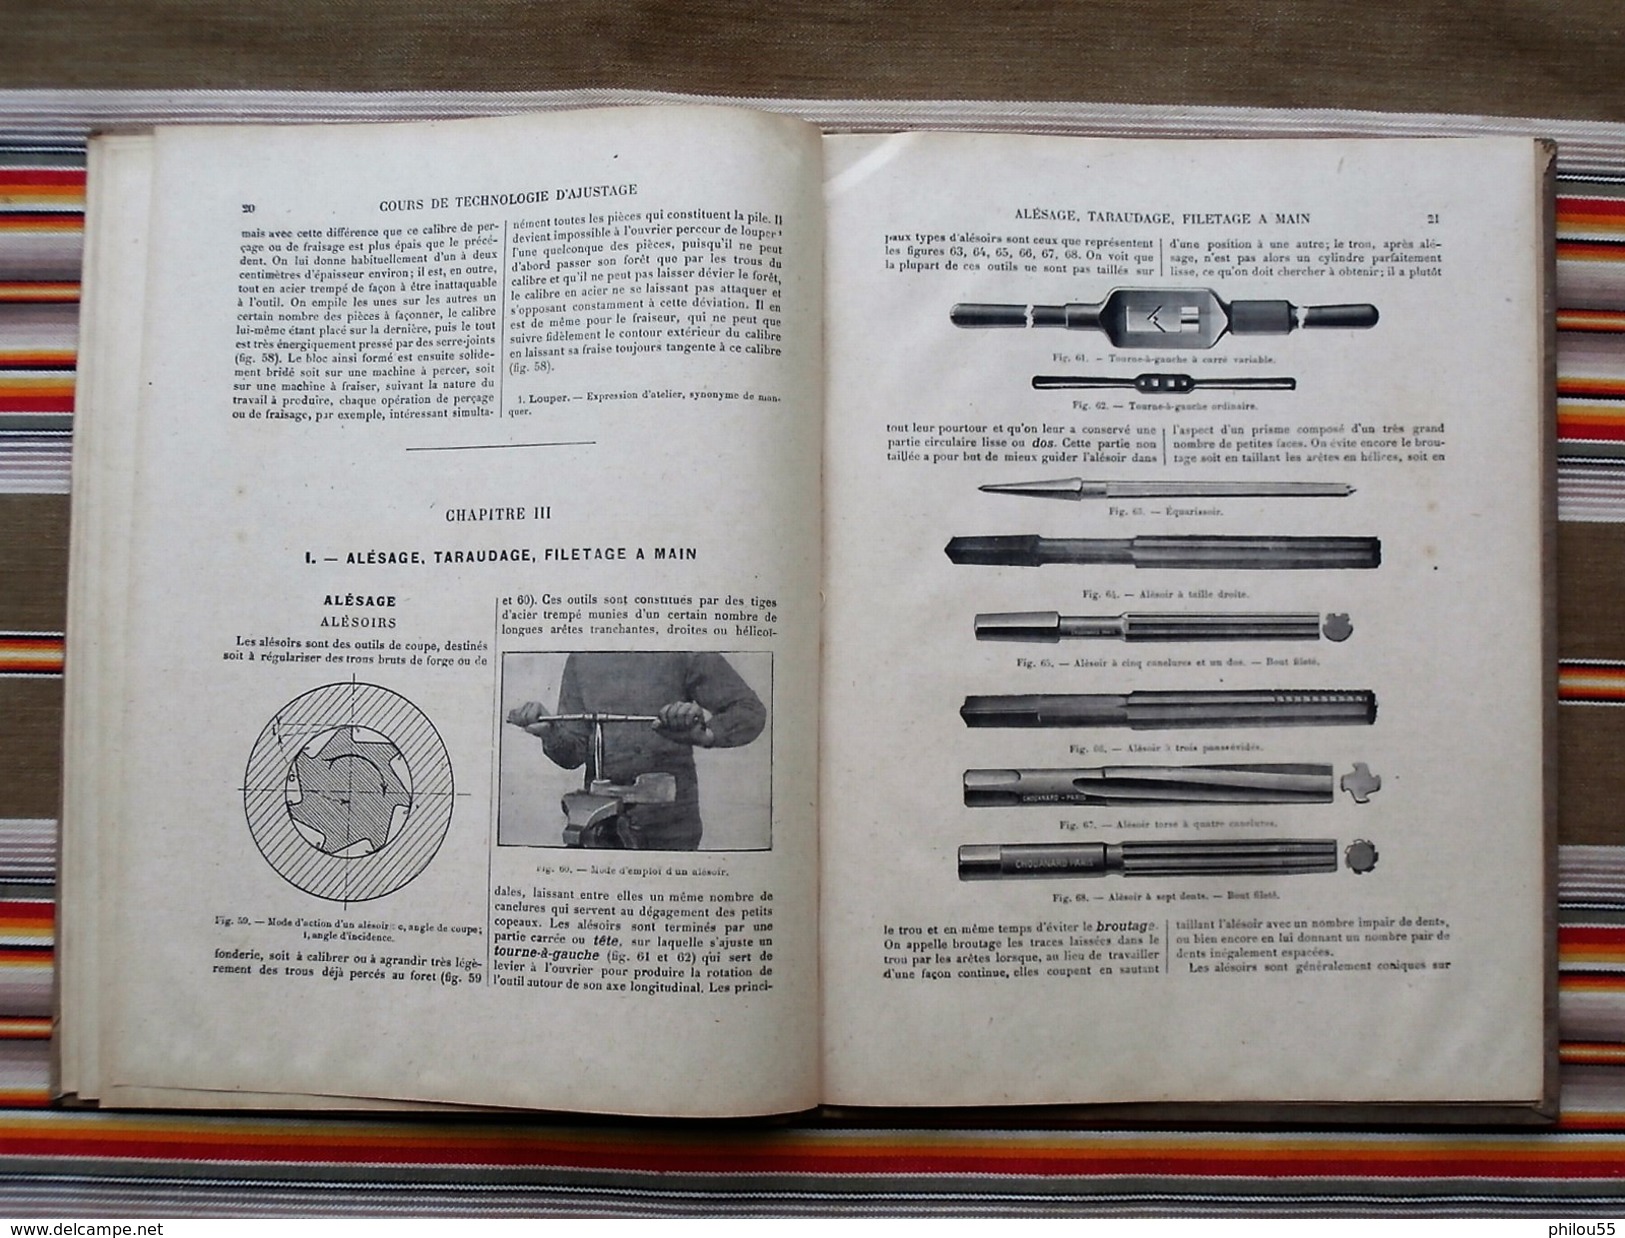 Technologie d'Ajustage Travail a la Main R. CAILLAUD Delagrave 1920